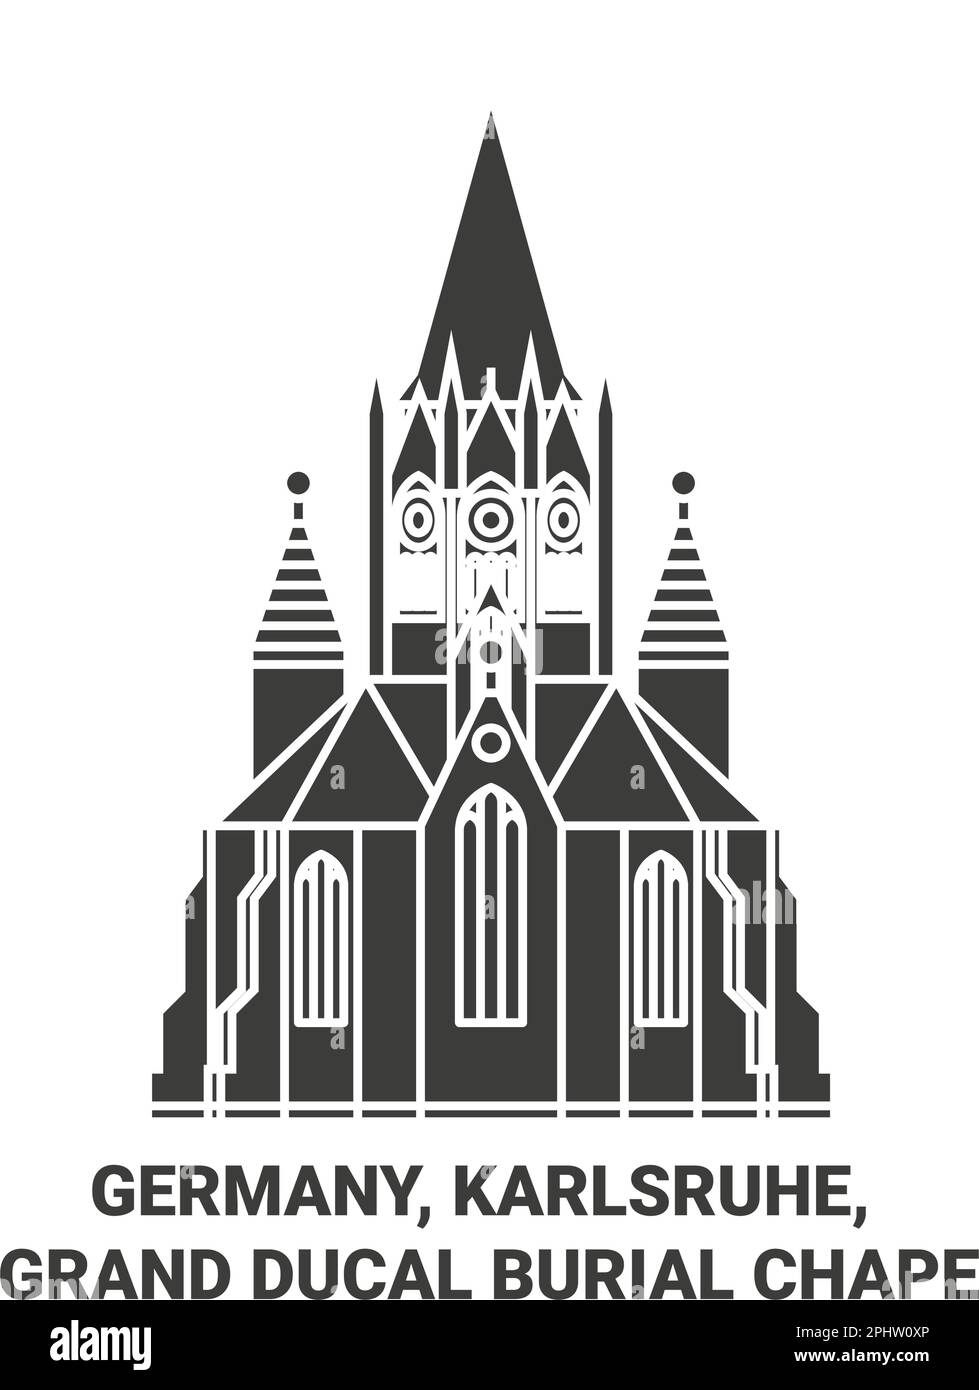 Germania, Karlsruhe, sepoltura granducale Chape viaggio punto di riferimento vettore illustrazione Illustrazione Vettoriale